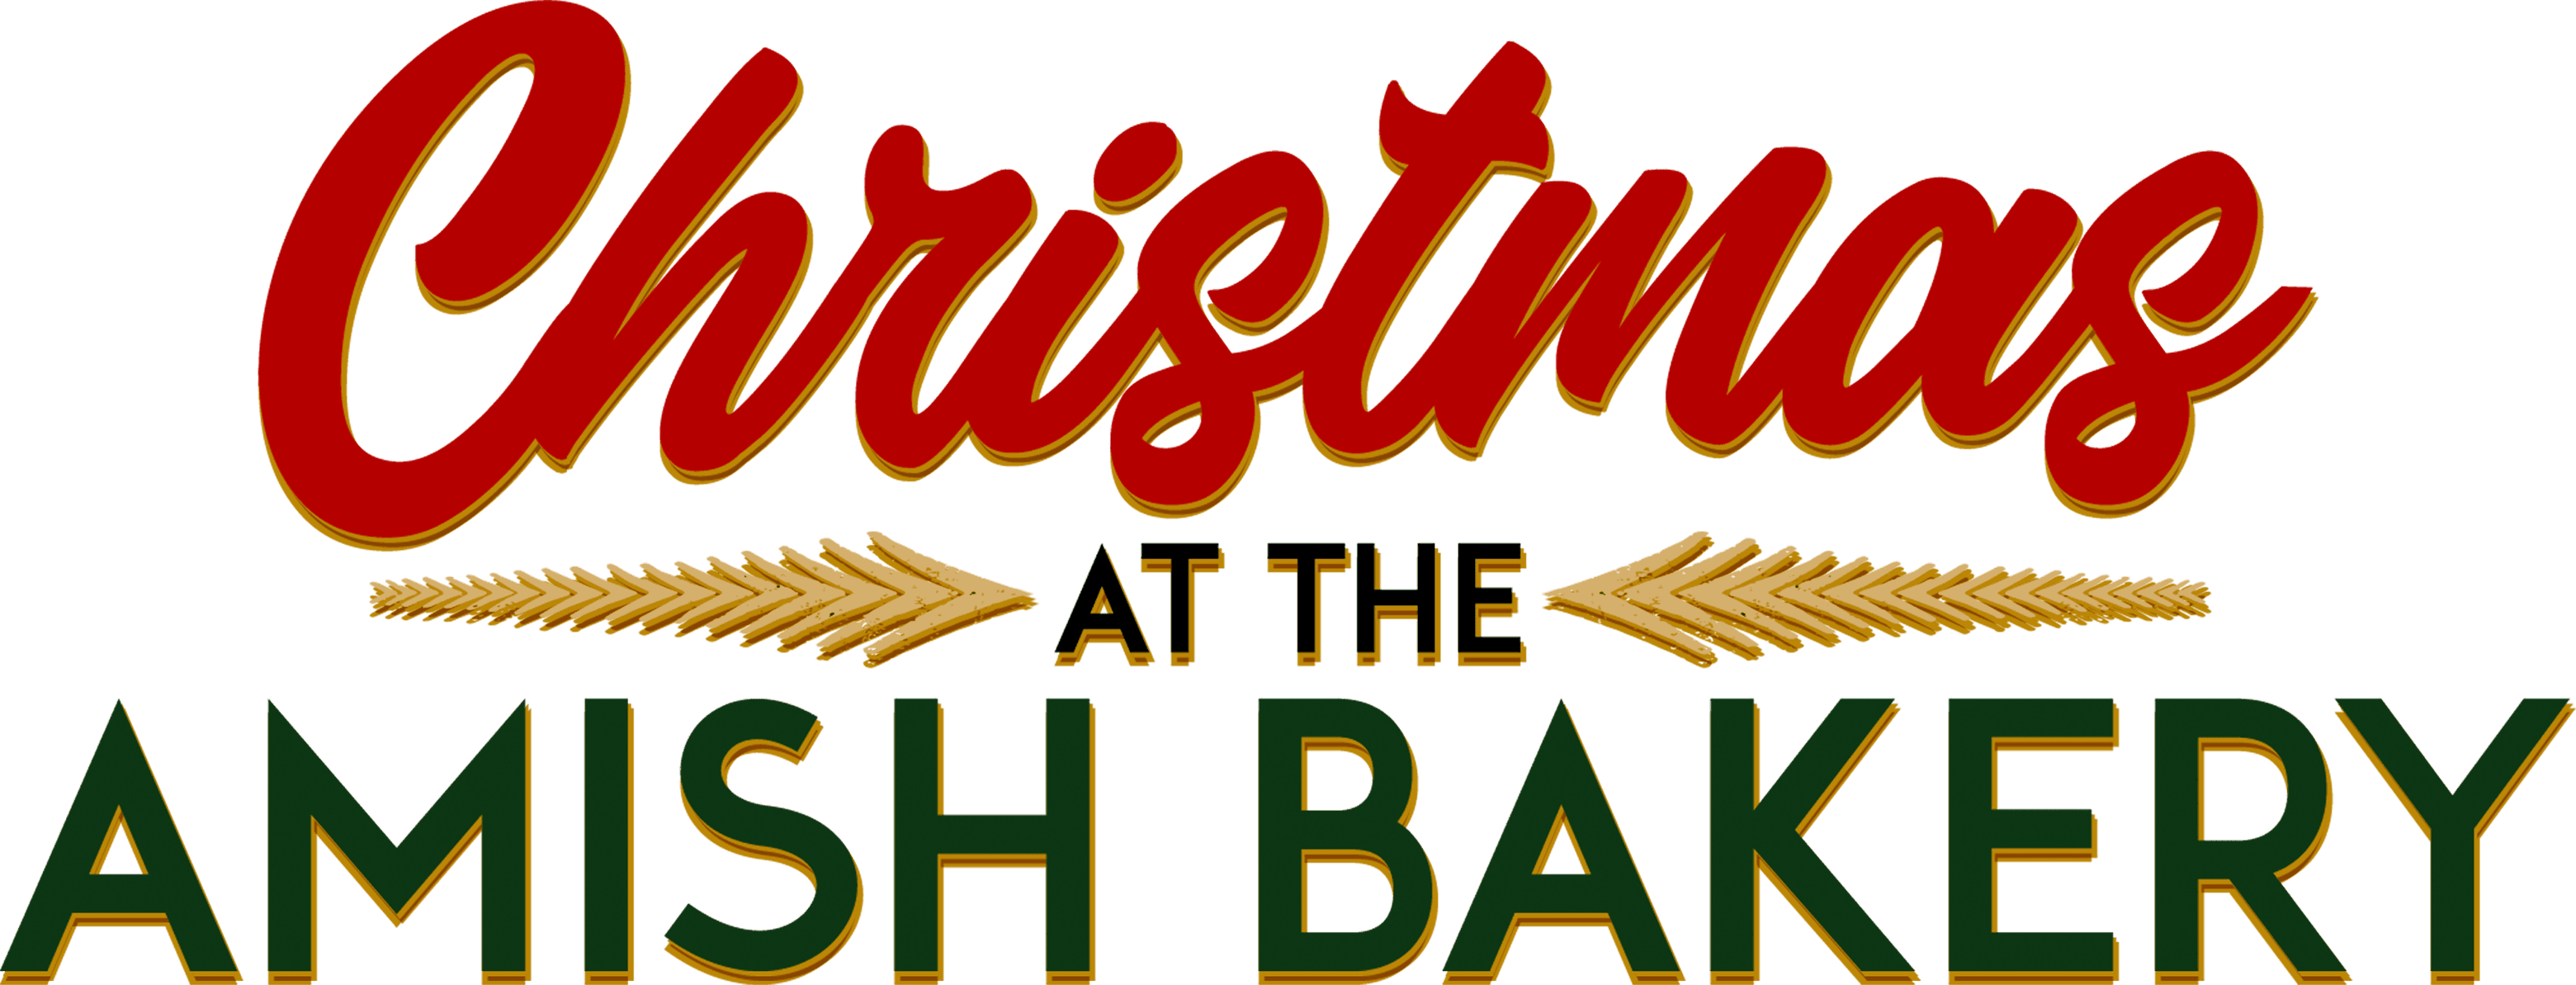 Christmas at the Amish Bakery logo